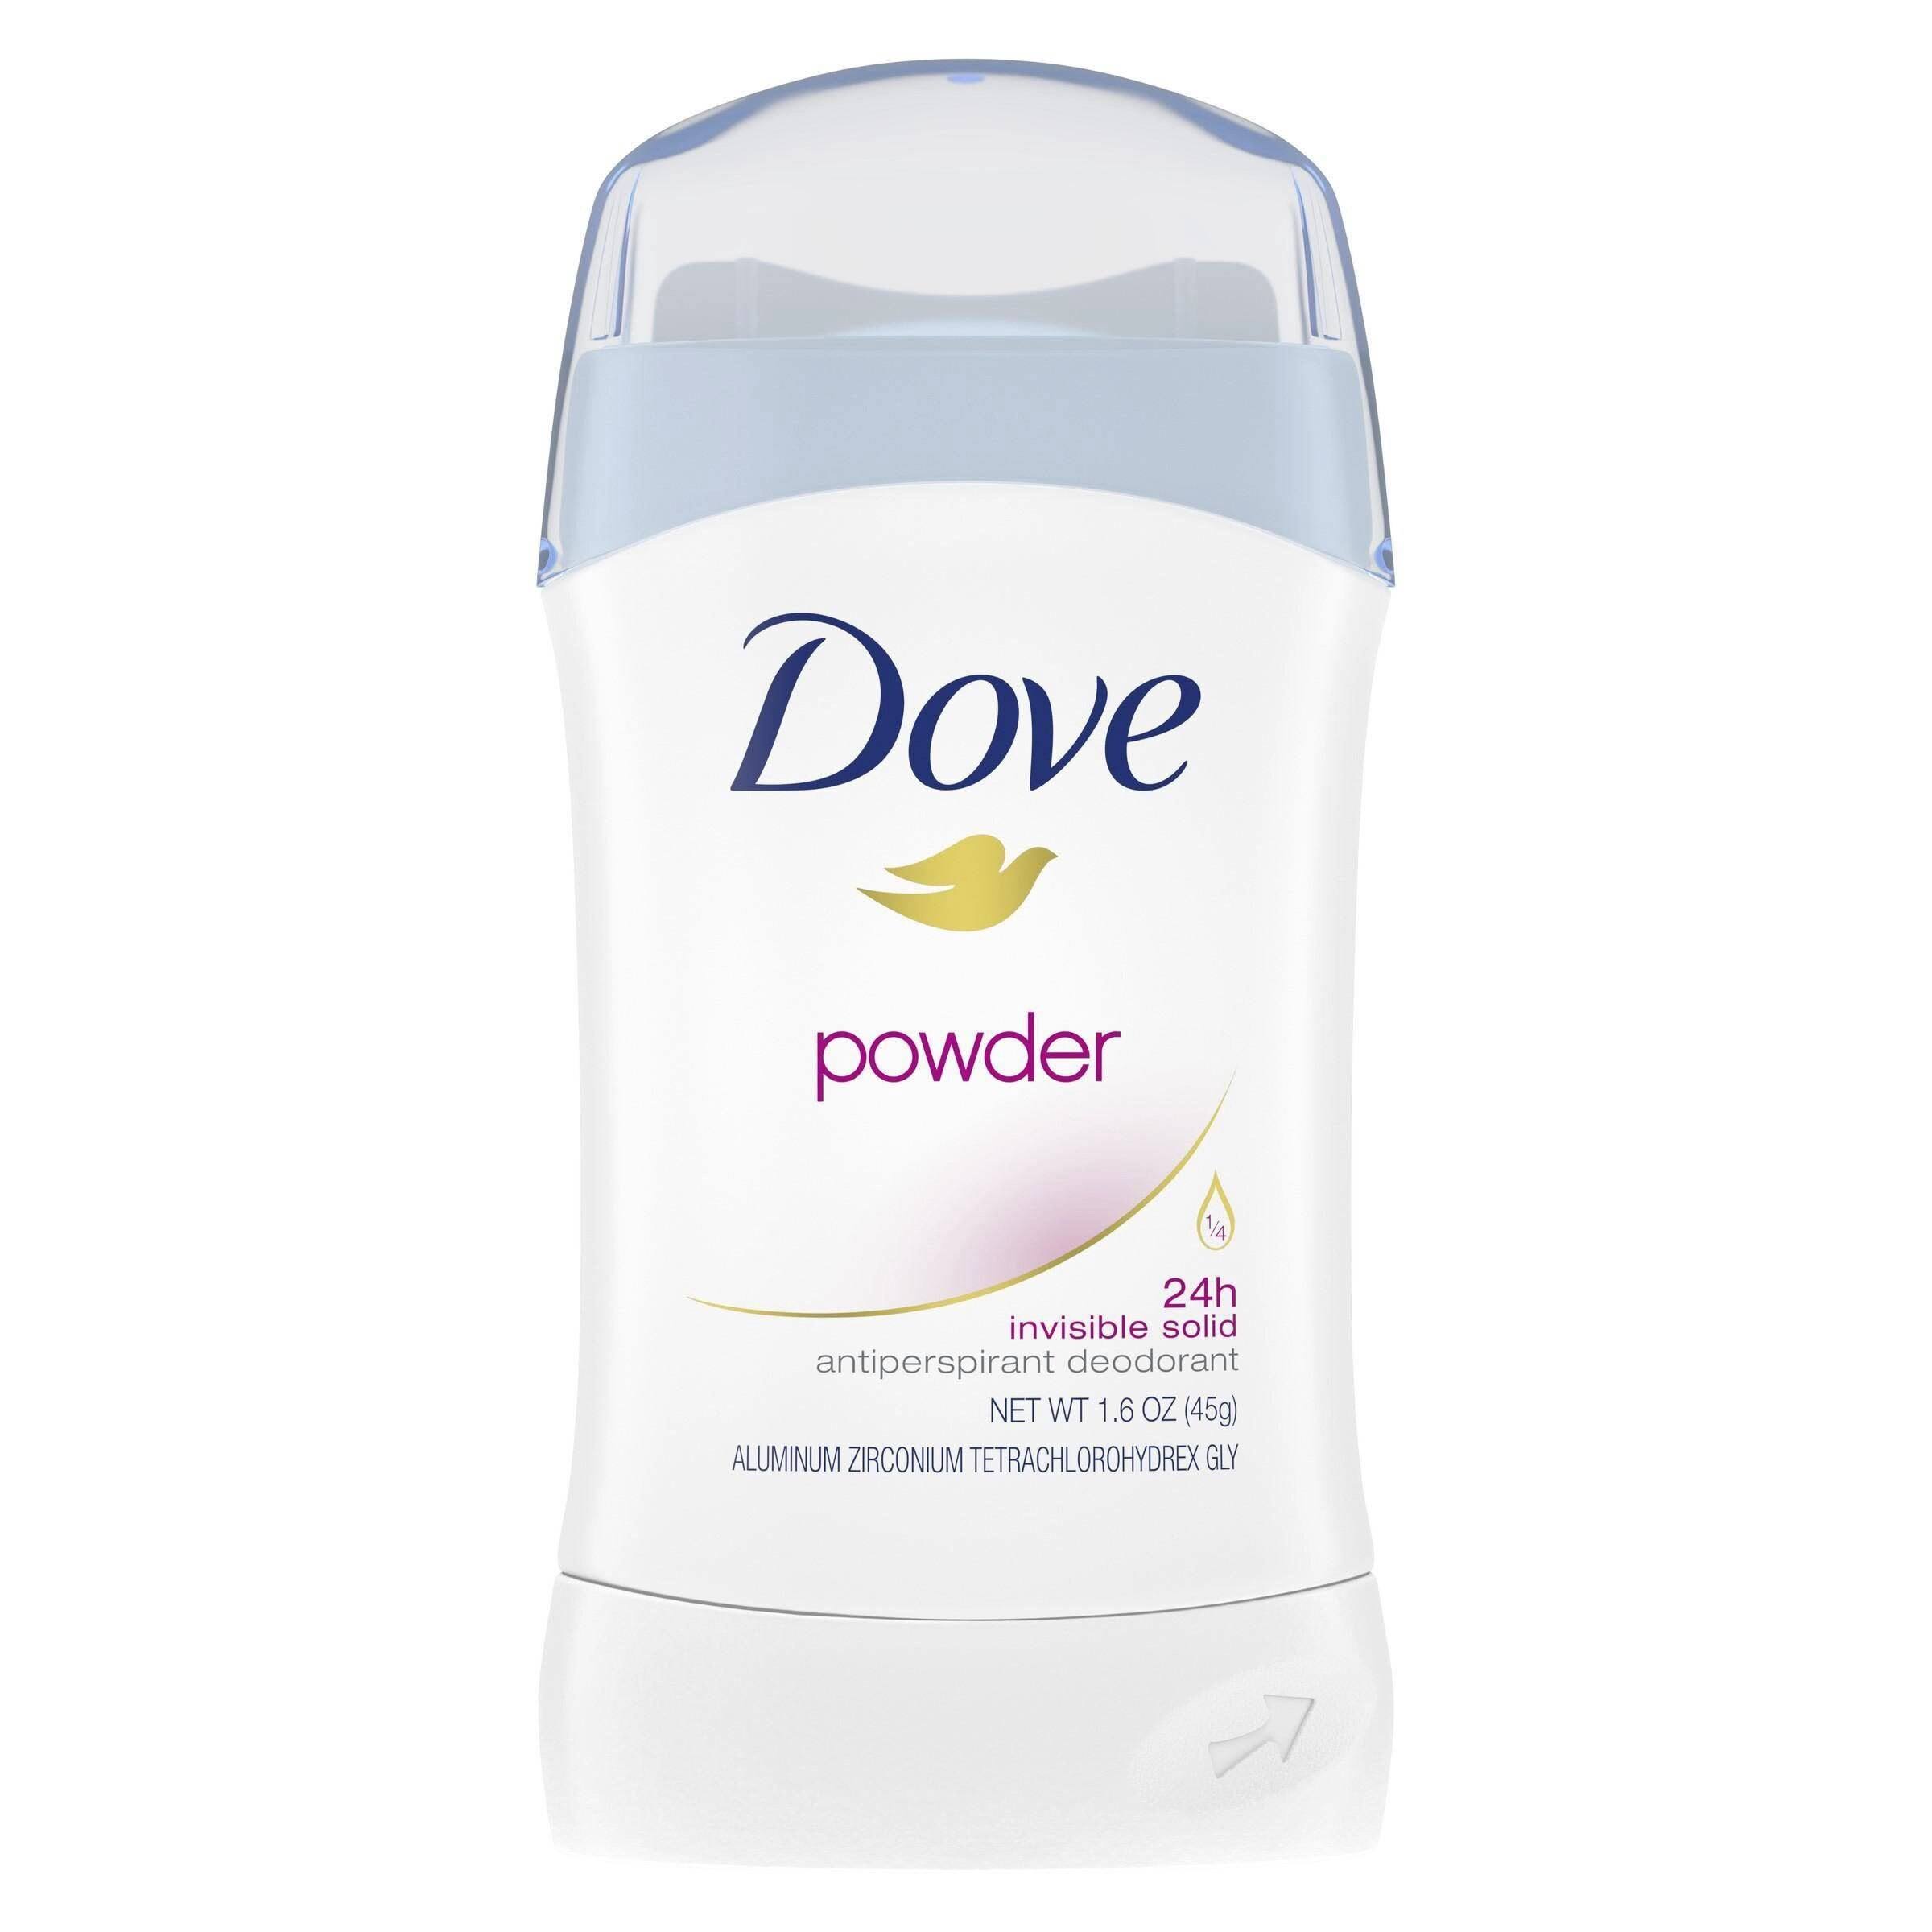 Dove Anti-Perspirant Deodorant Invisible Solid Powder - 1.6oz